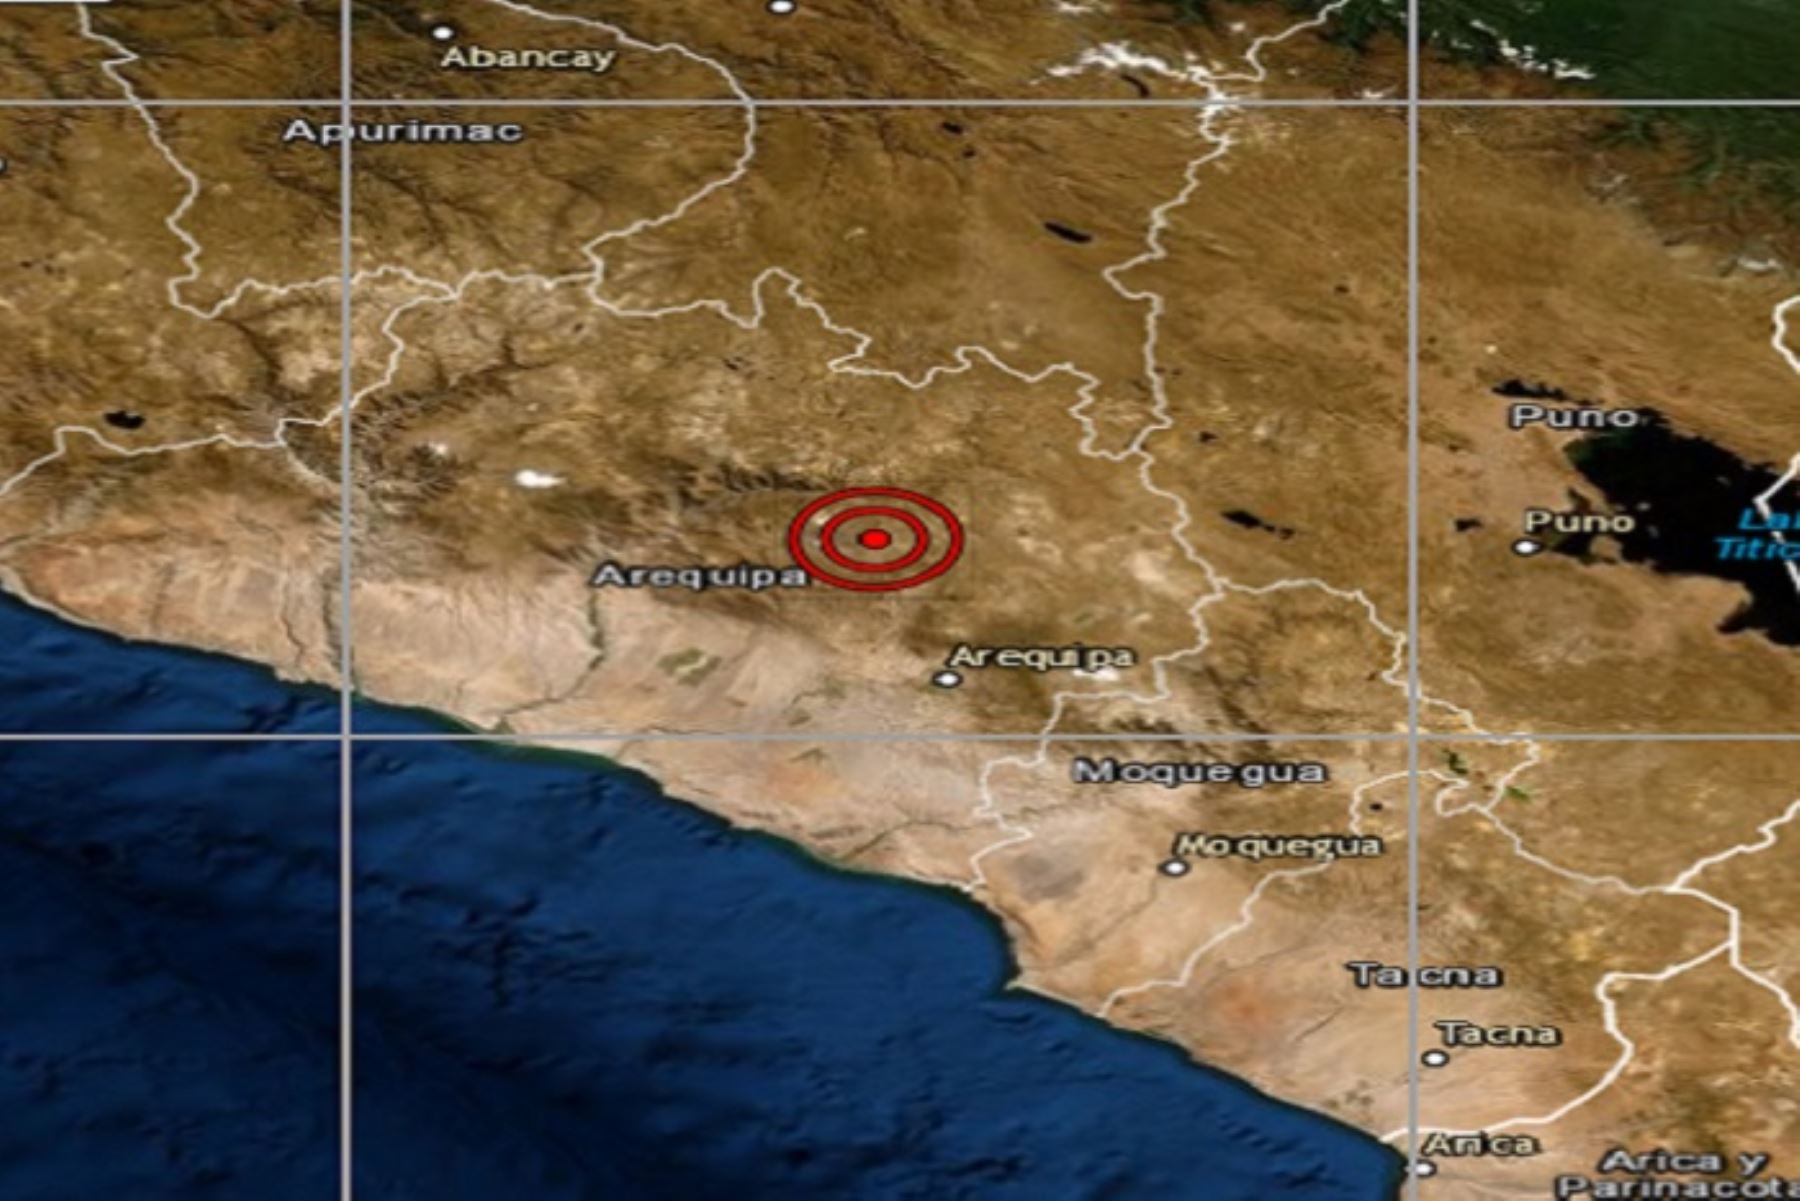 Tres sismos moderados se registraron esta mañana en el distrito de Maca, provincia de Caylloma, región Arequipa, informó el Instituto Geofísico del Perú (IGP) y las autoridades de defensa civil no han reportado daños personales ni materiales hasta el momento.